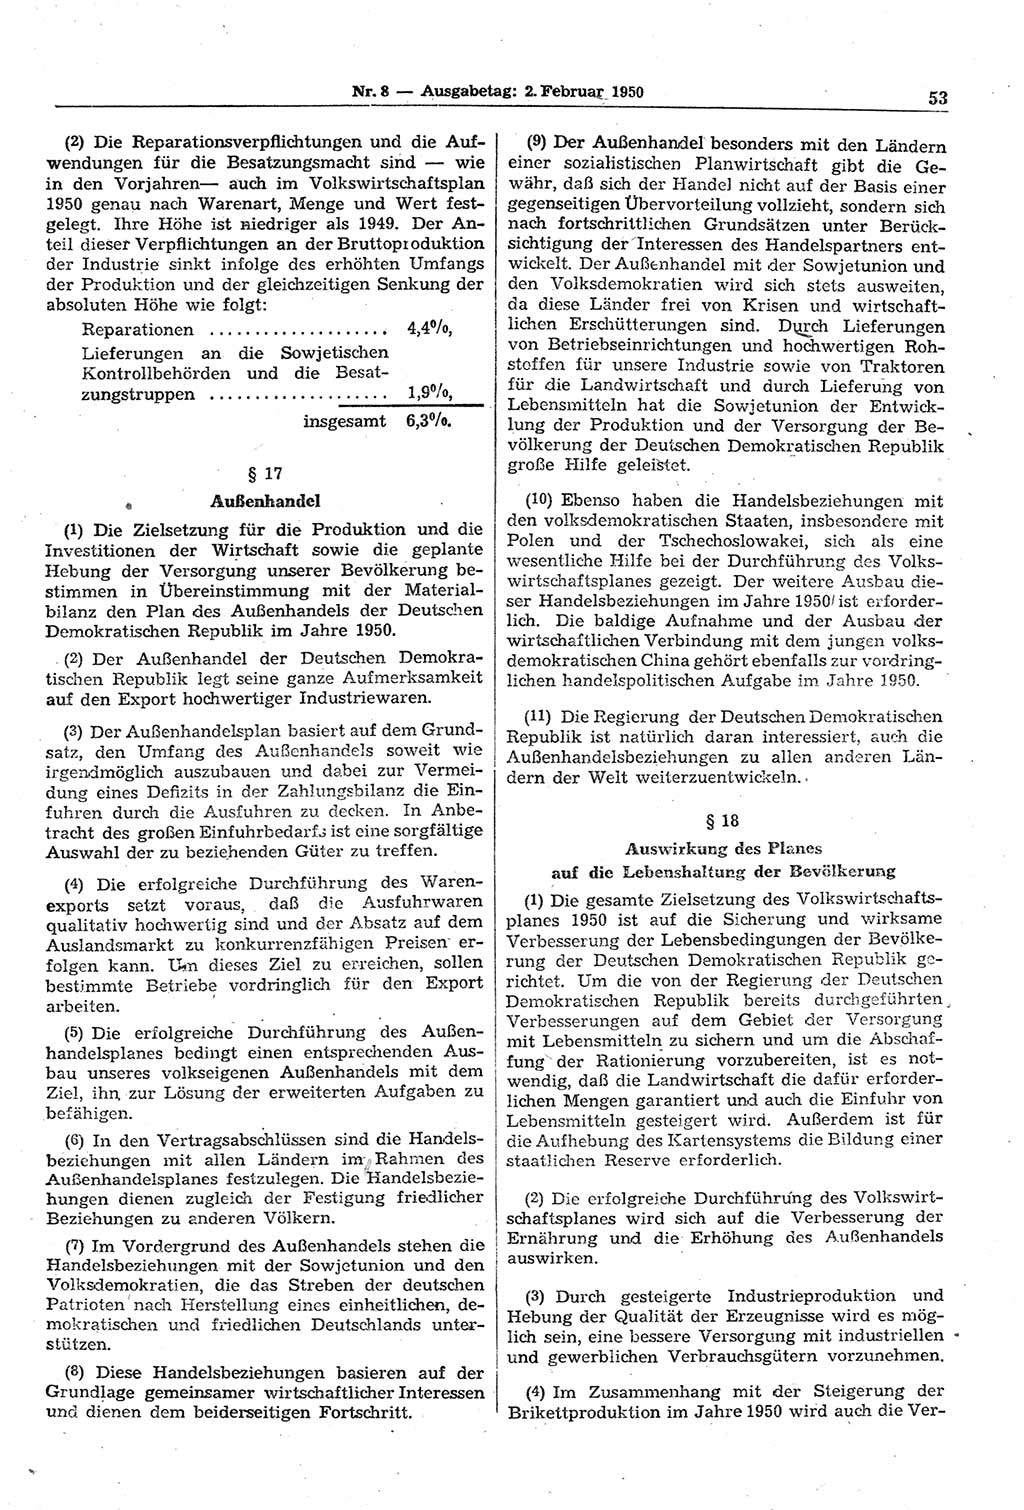 Gesetzblatt (GBl.) der Deutschen Demokratischen Republik (DDR) 1950, Seite 53 (GBl. DDR 1950, S. 53)